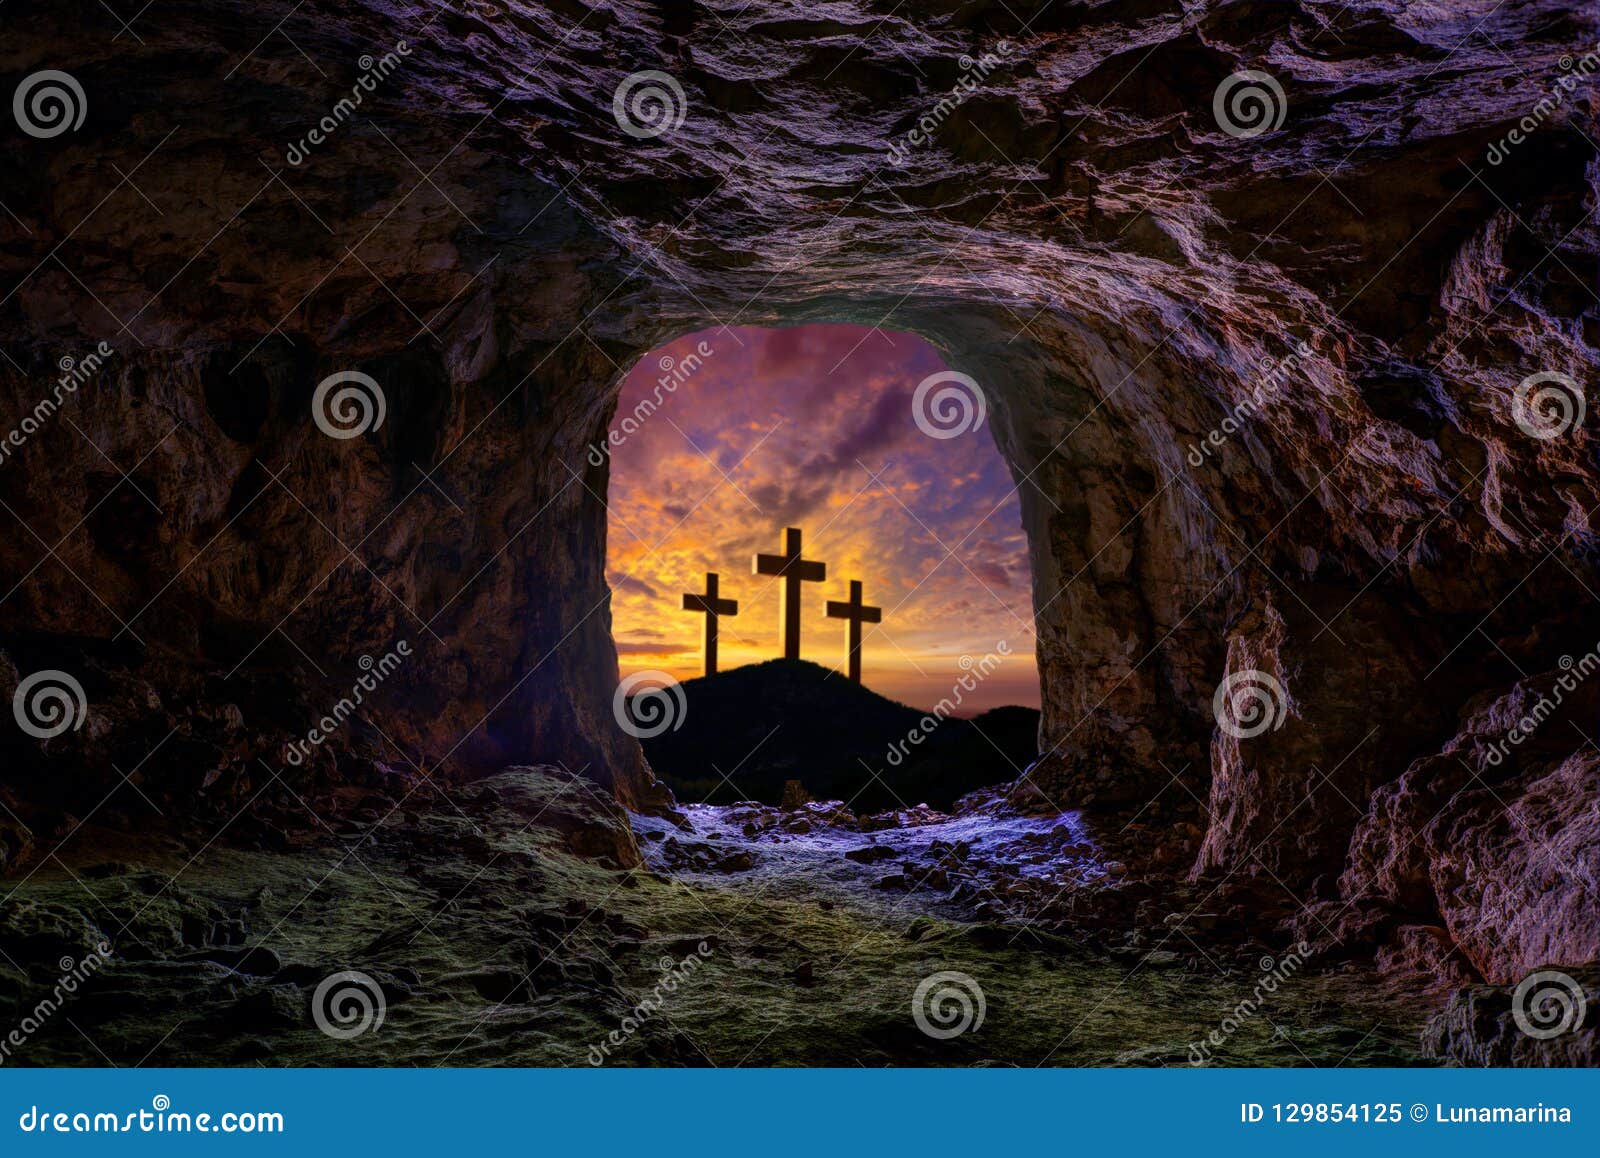 jesus resurrection sepulcher grave cross